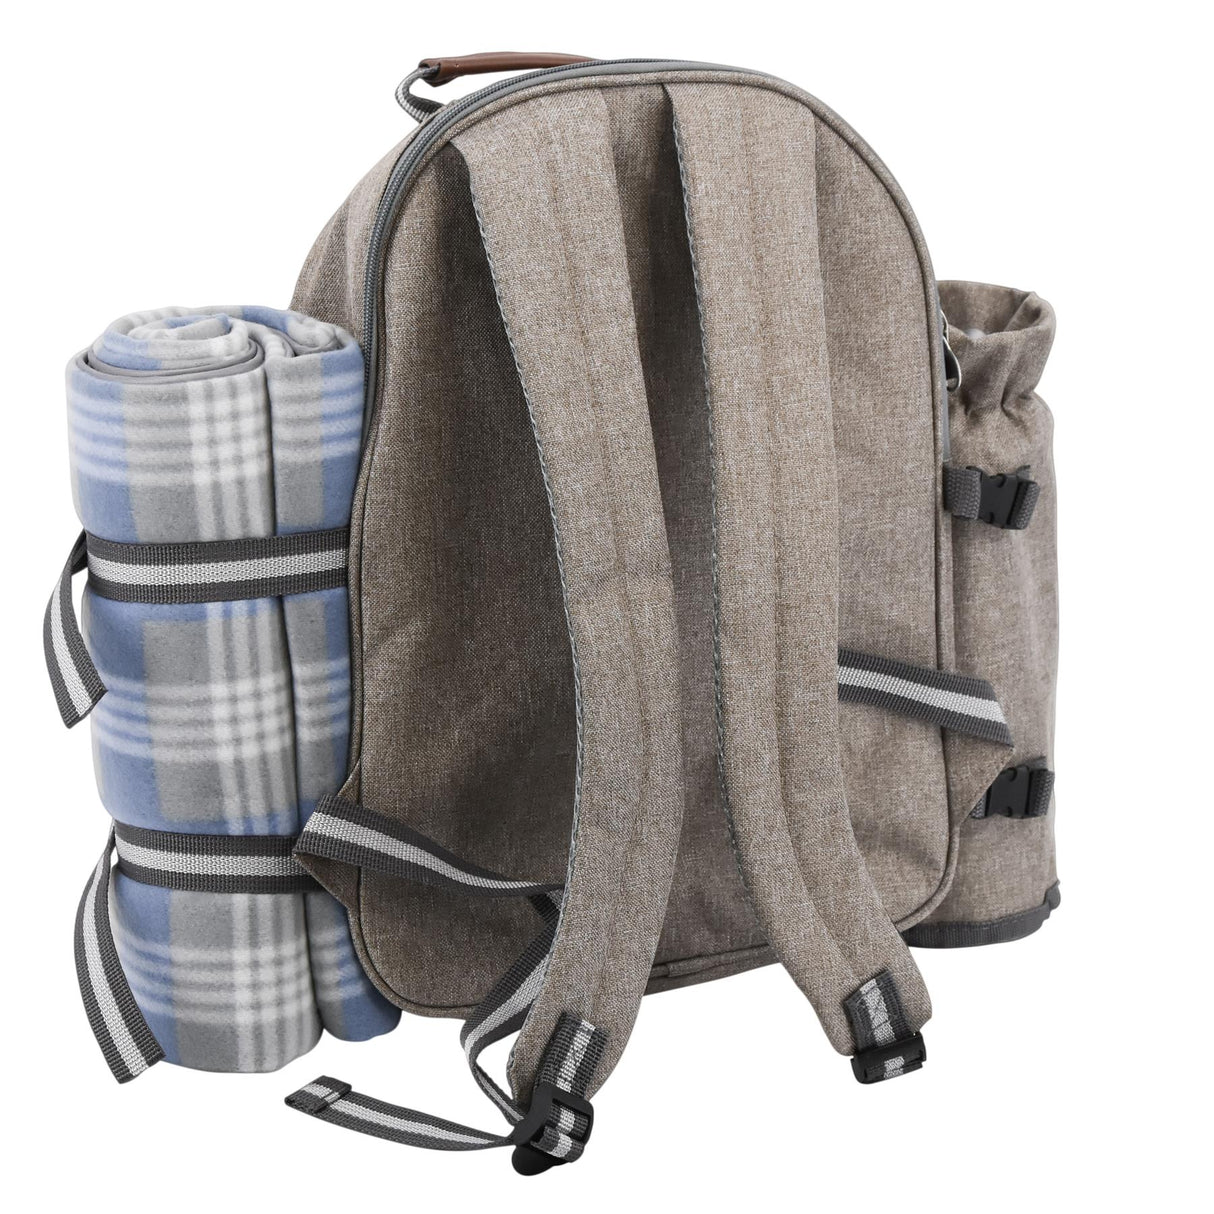 Geezy 4 Person Family Picnic Backpack Hamper Cooler Bag Bottle Holder Carrier by Geezy - UKBuyZone